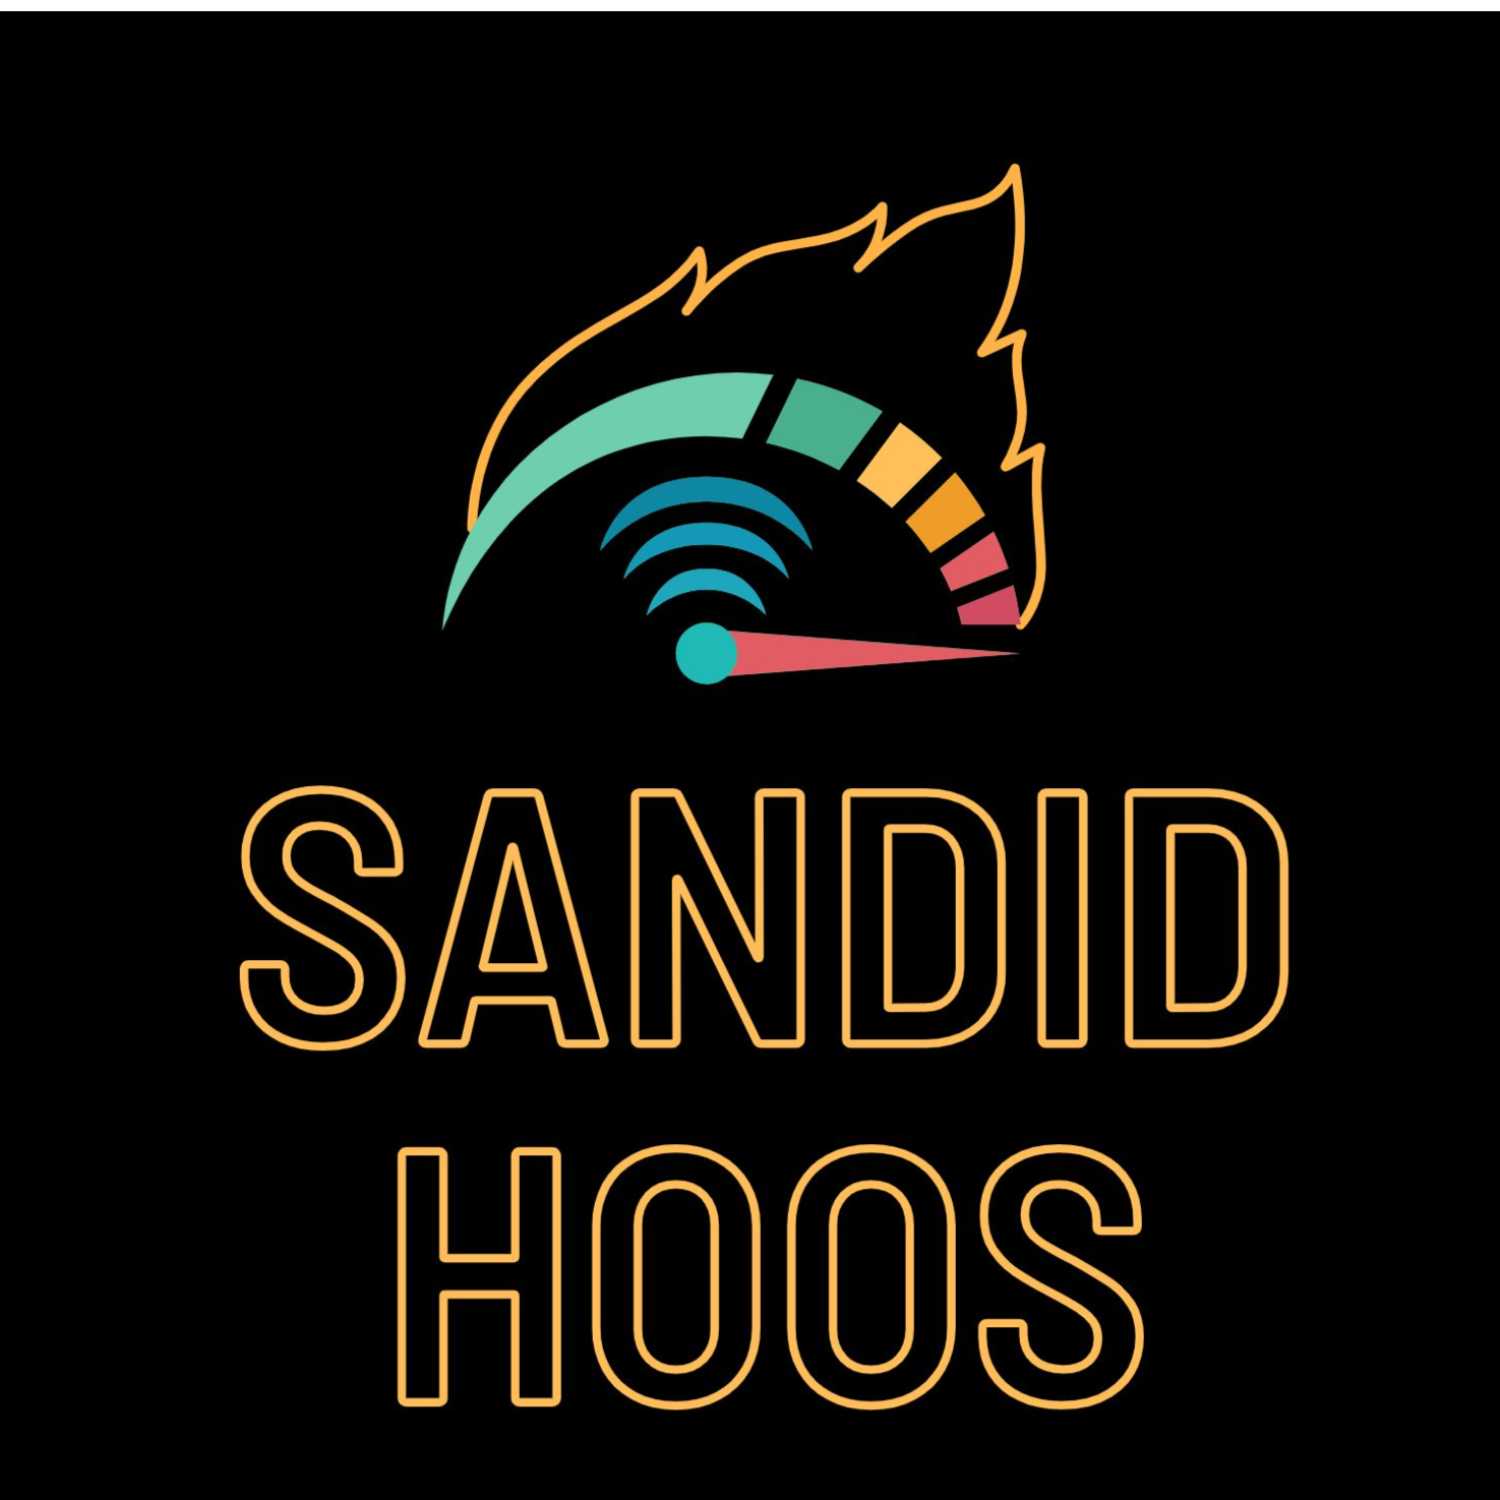 Sandid Hoos Podcast